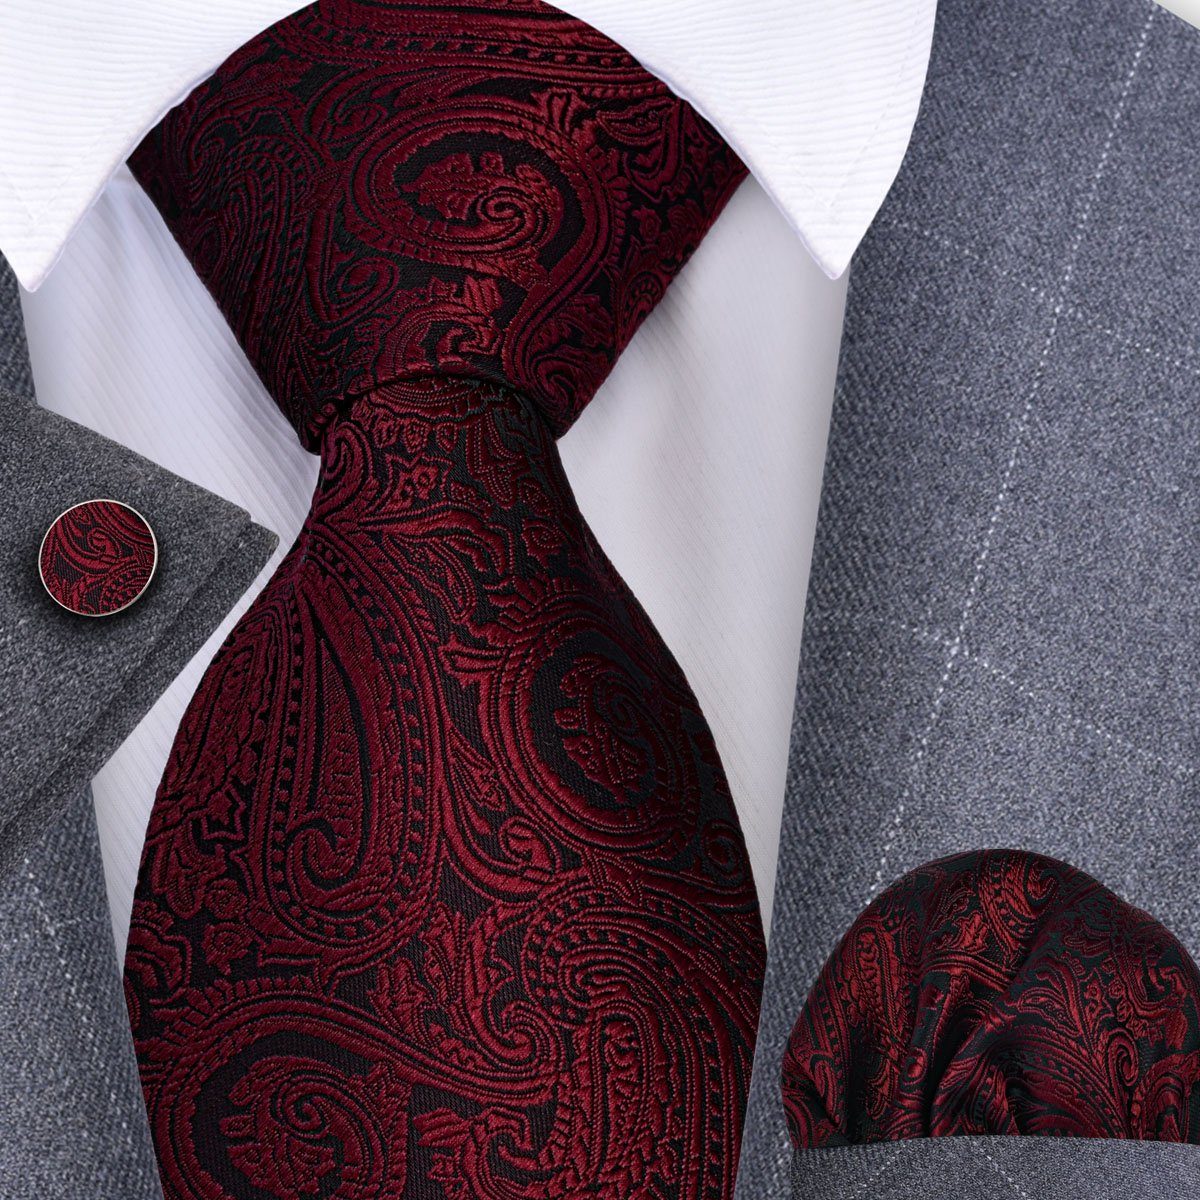 Moschen-Bayern Krawatte Seidenkrawatte Trachtenkrawatte Krawatte  Herrenkrawatte Seide Rot Krawatten-Set - Krawatte + Einstecktuch +  Manschettenknöpfe, Überzeugen Sie sich selbst von unseren schönen Krawatten  in edlen Dessins | Breite Krawatten